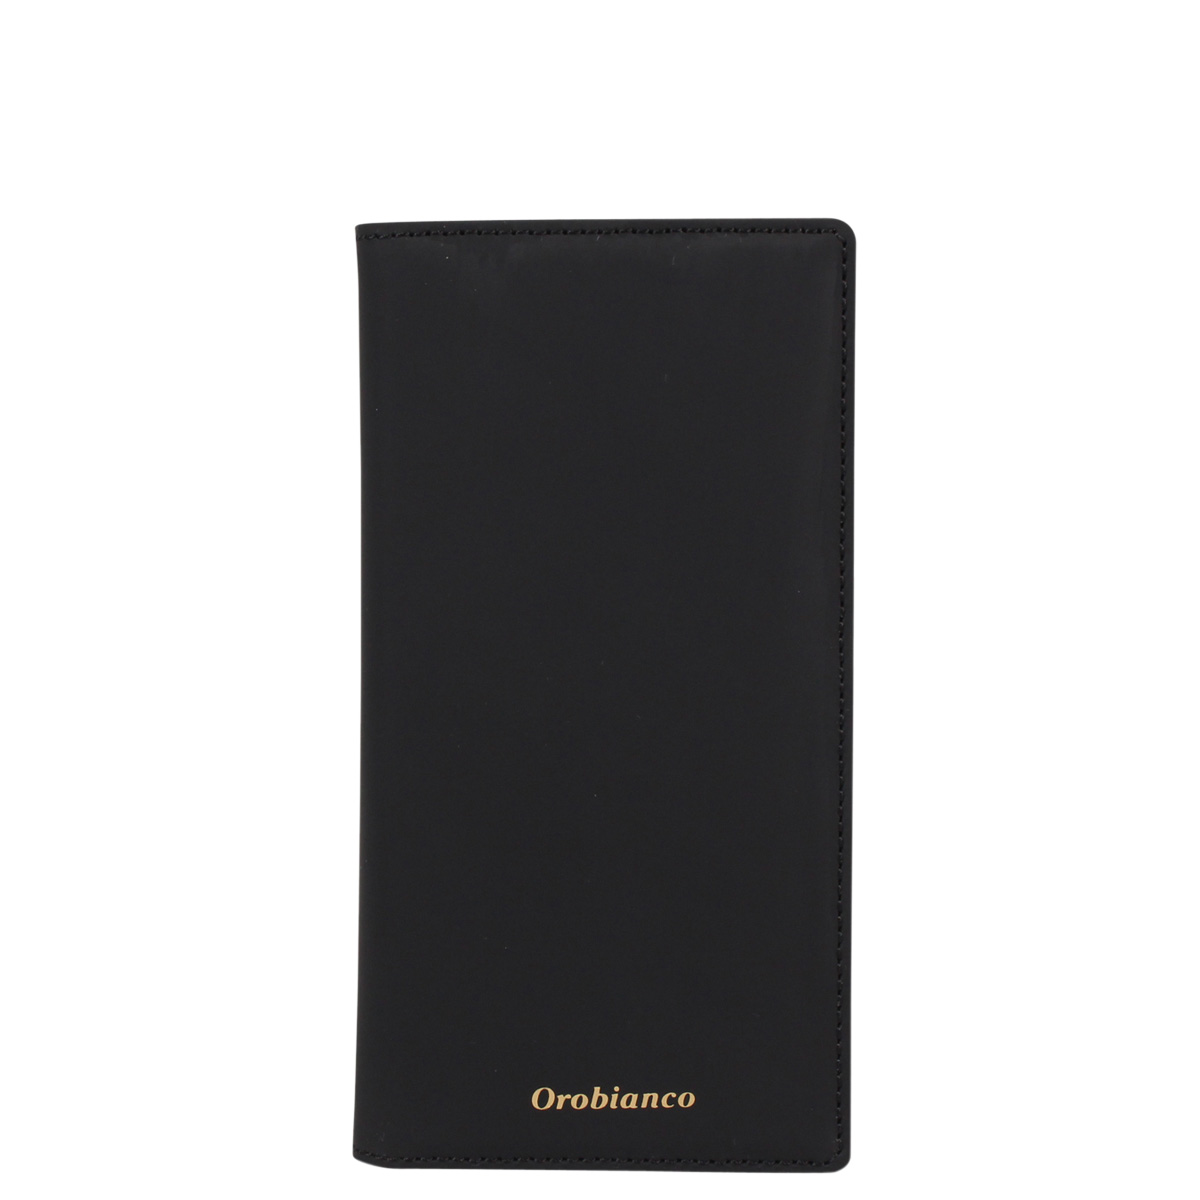 史上一番安い Orobianco 新入荷 2 3 Orip 0007 11pro 黒 オレンジ グレージュ ブラック レディース メンズ アイフォン 手帳型 携帯 スマホ ケース Pro Iphone11 オロビアンコ Case Smartphone Type Book Gomma ケース カバー Allsmart Websys Co Il